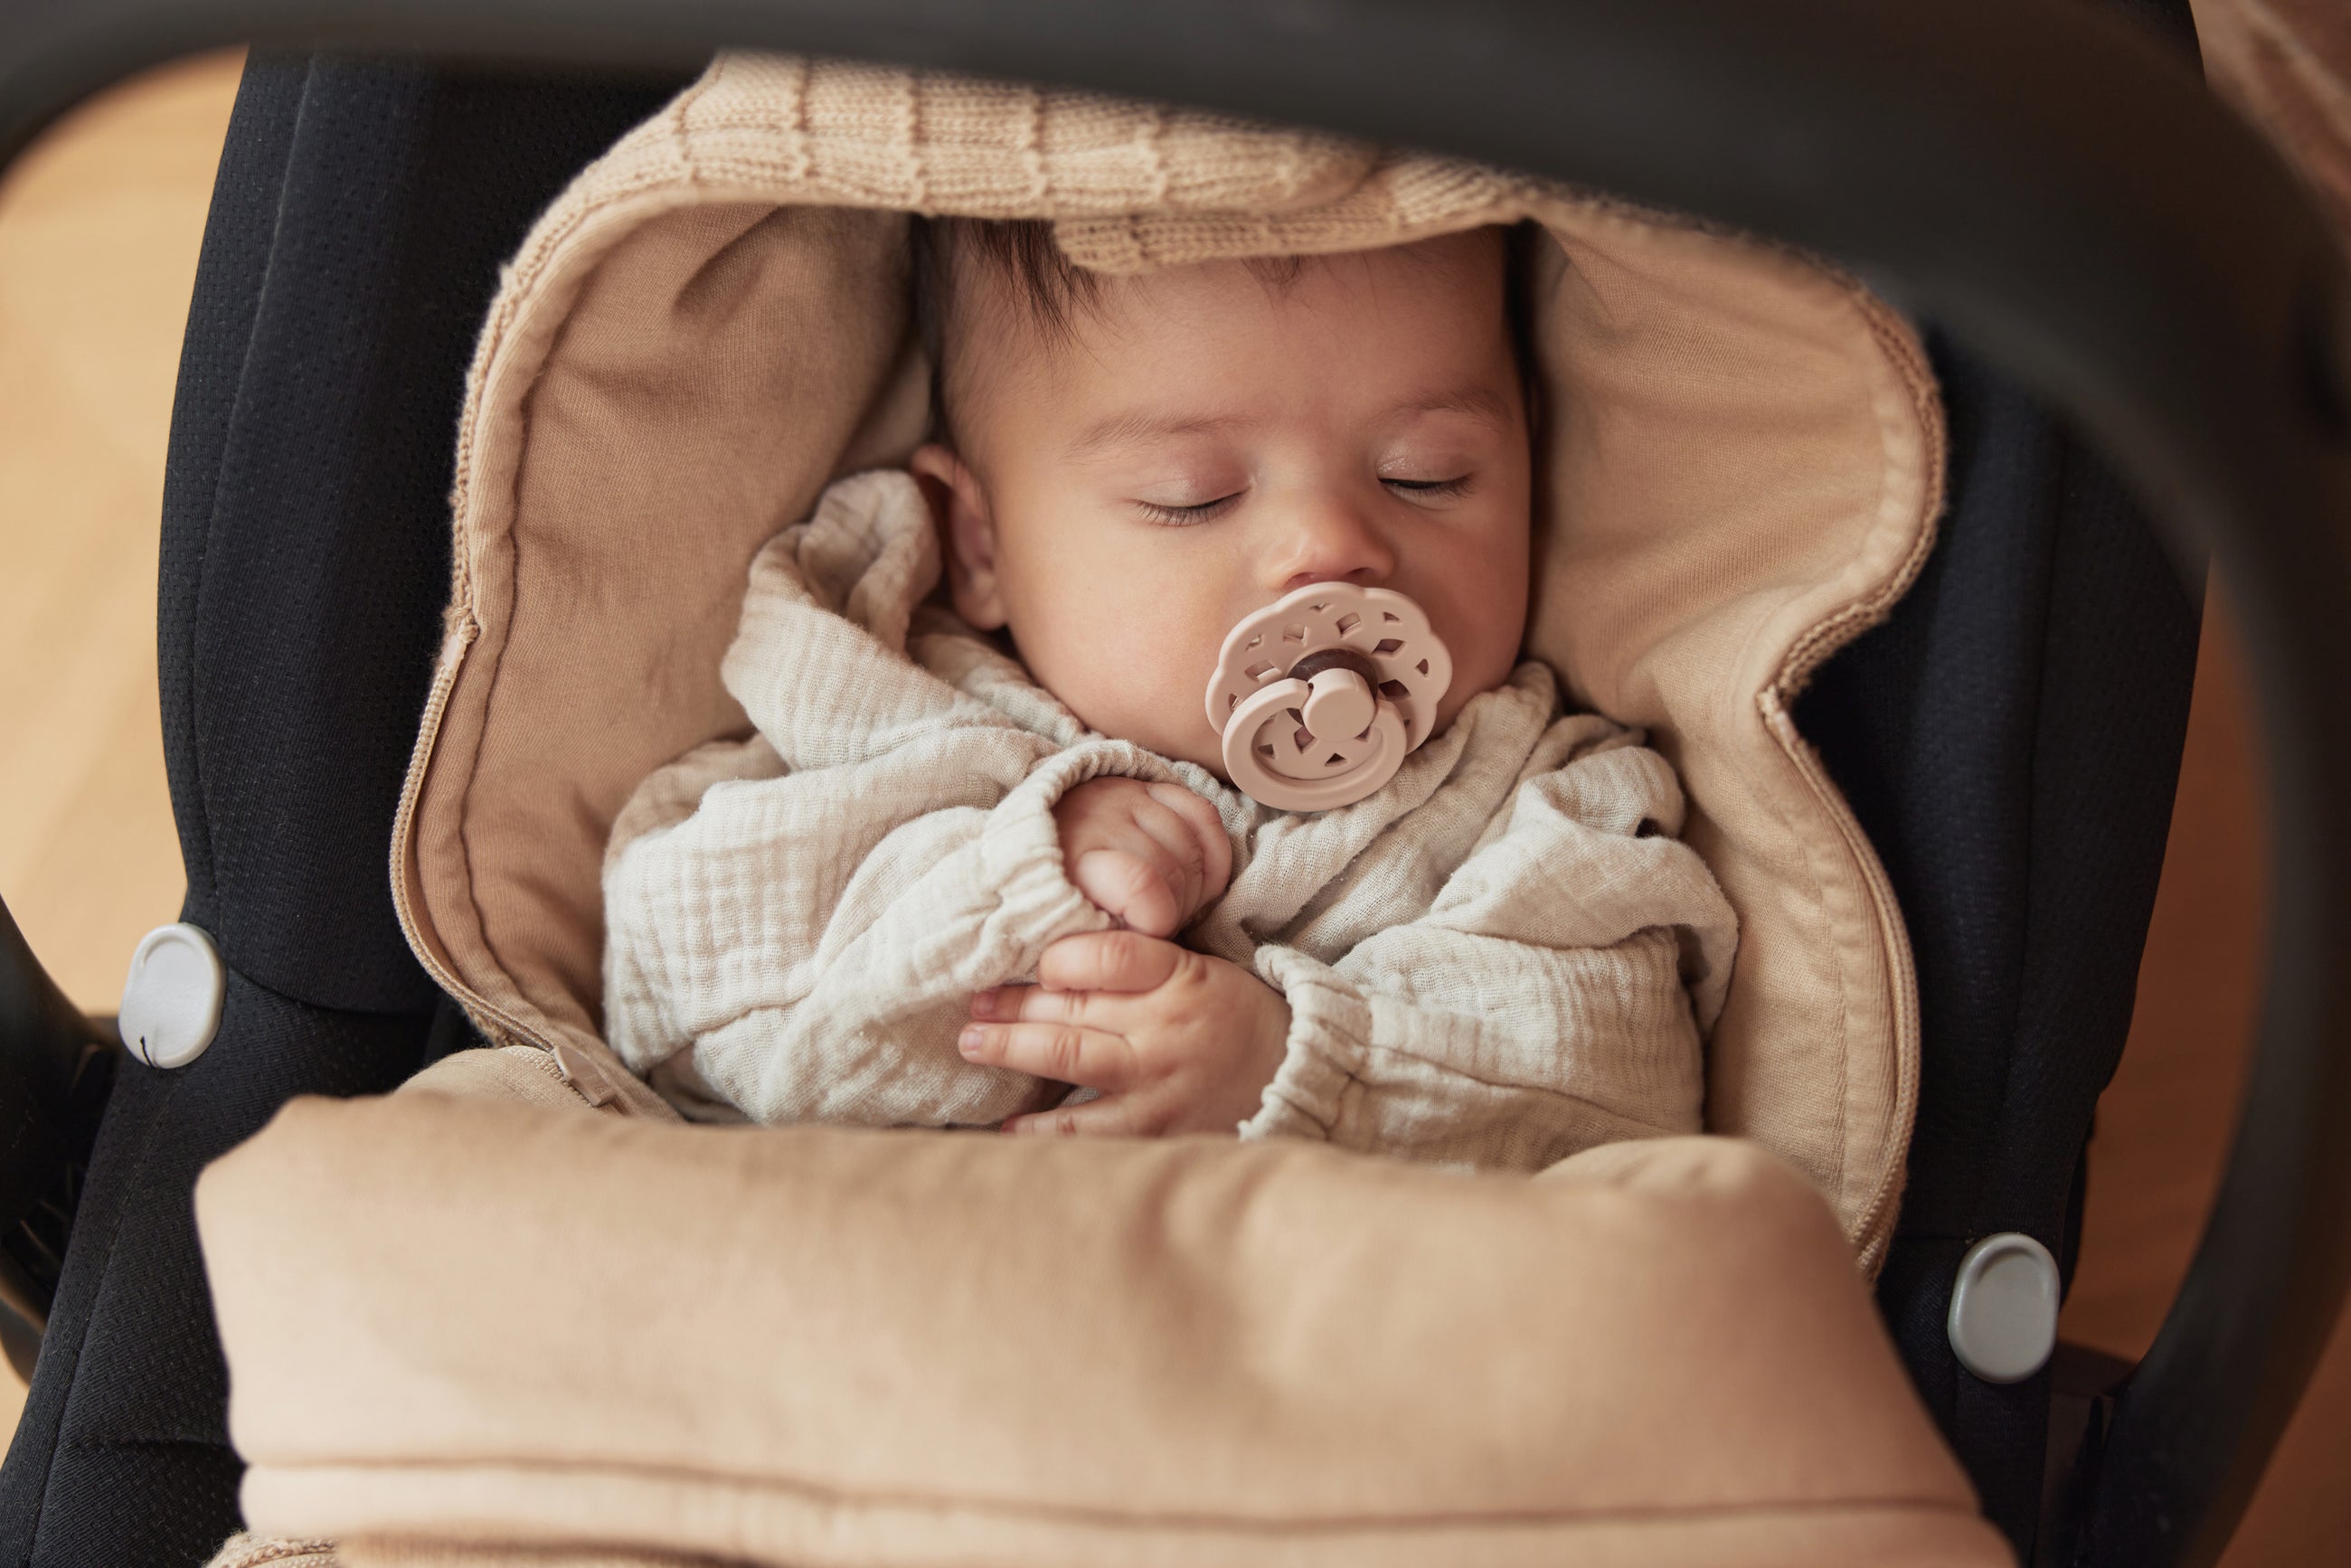 Siège Auto Sécurité Voiture Pour bébé - Coussin Portable Pour bébé